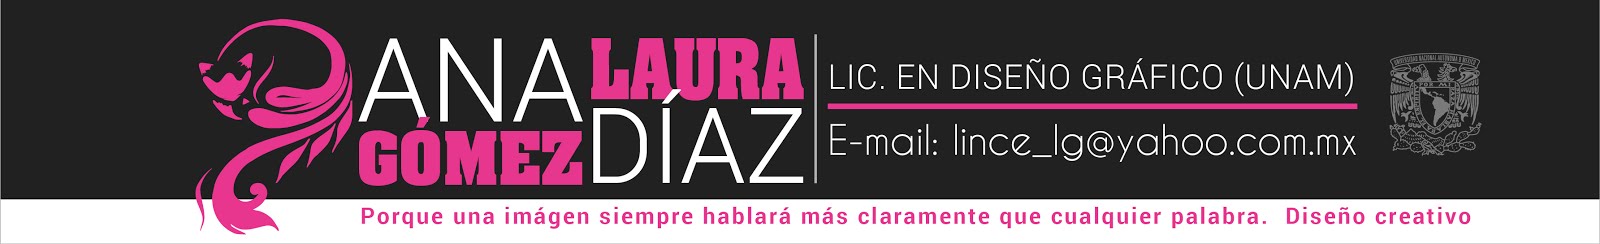 Laura Gómez. Lic en Diseño Gráfico (UNAM)